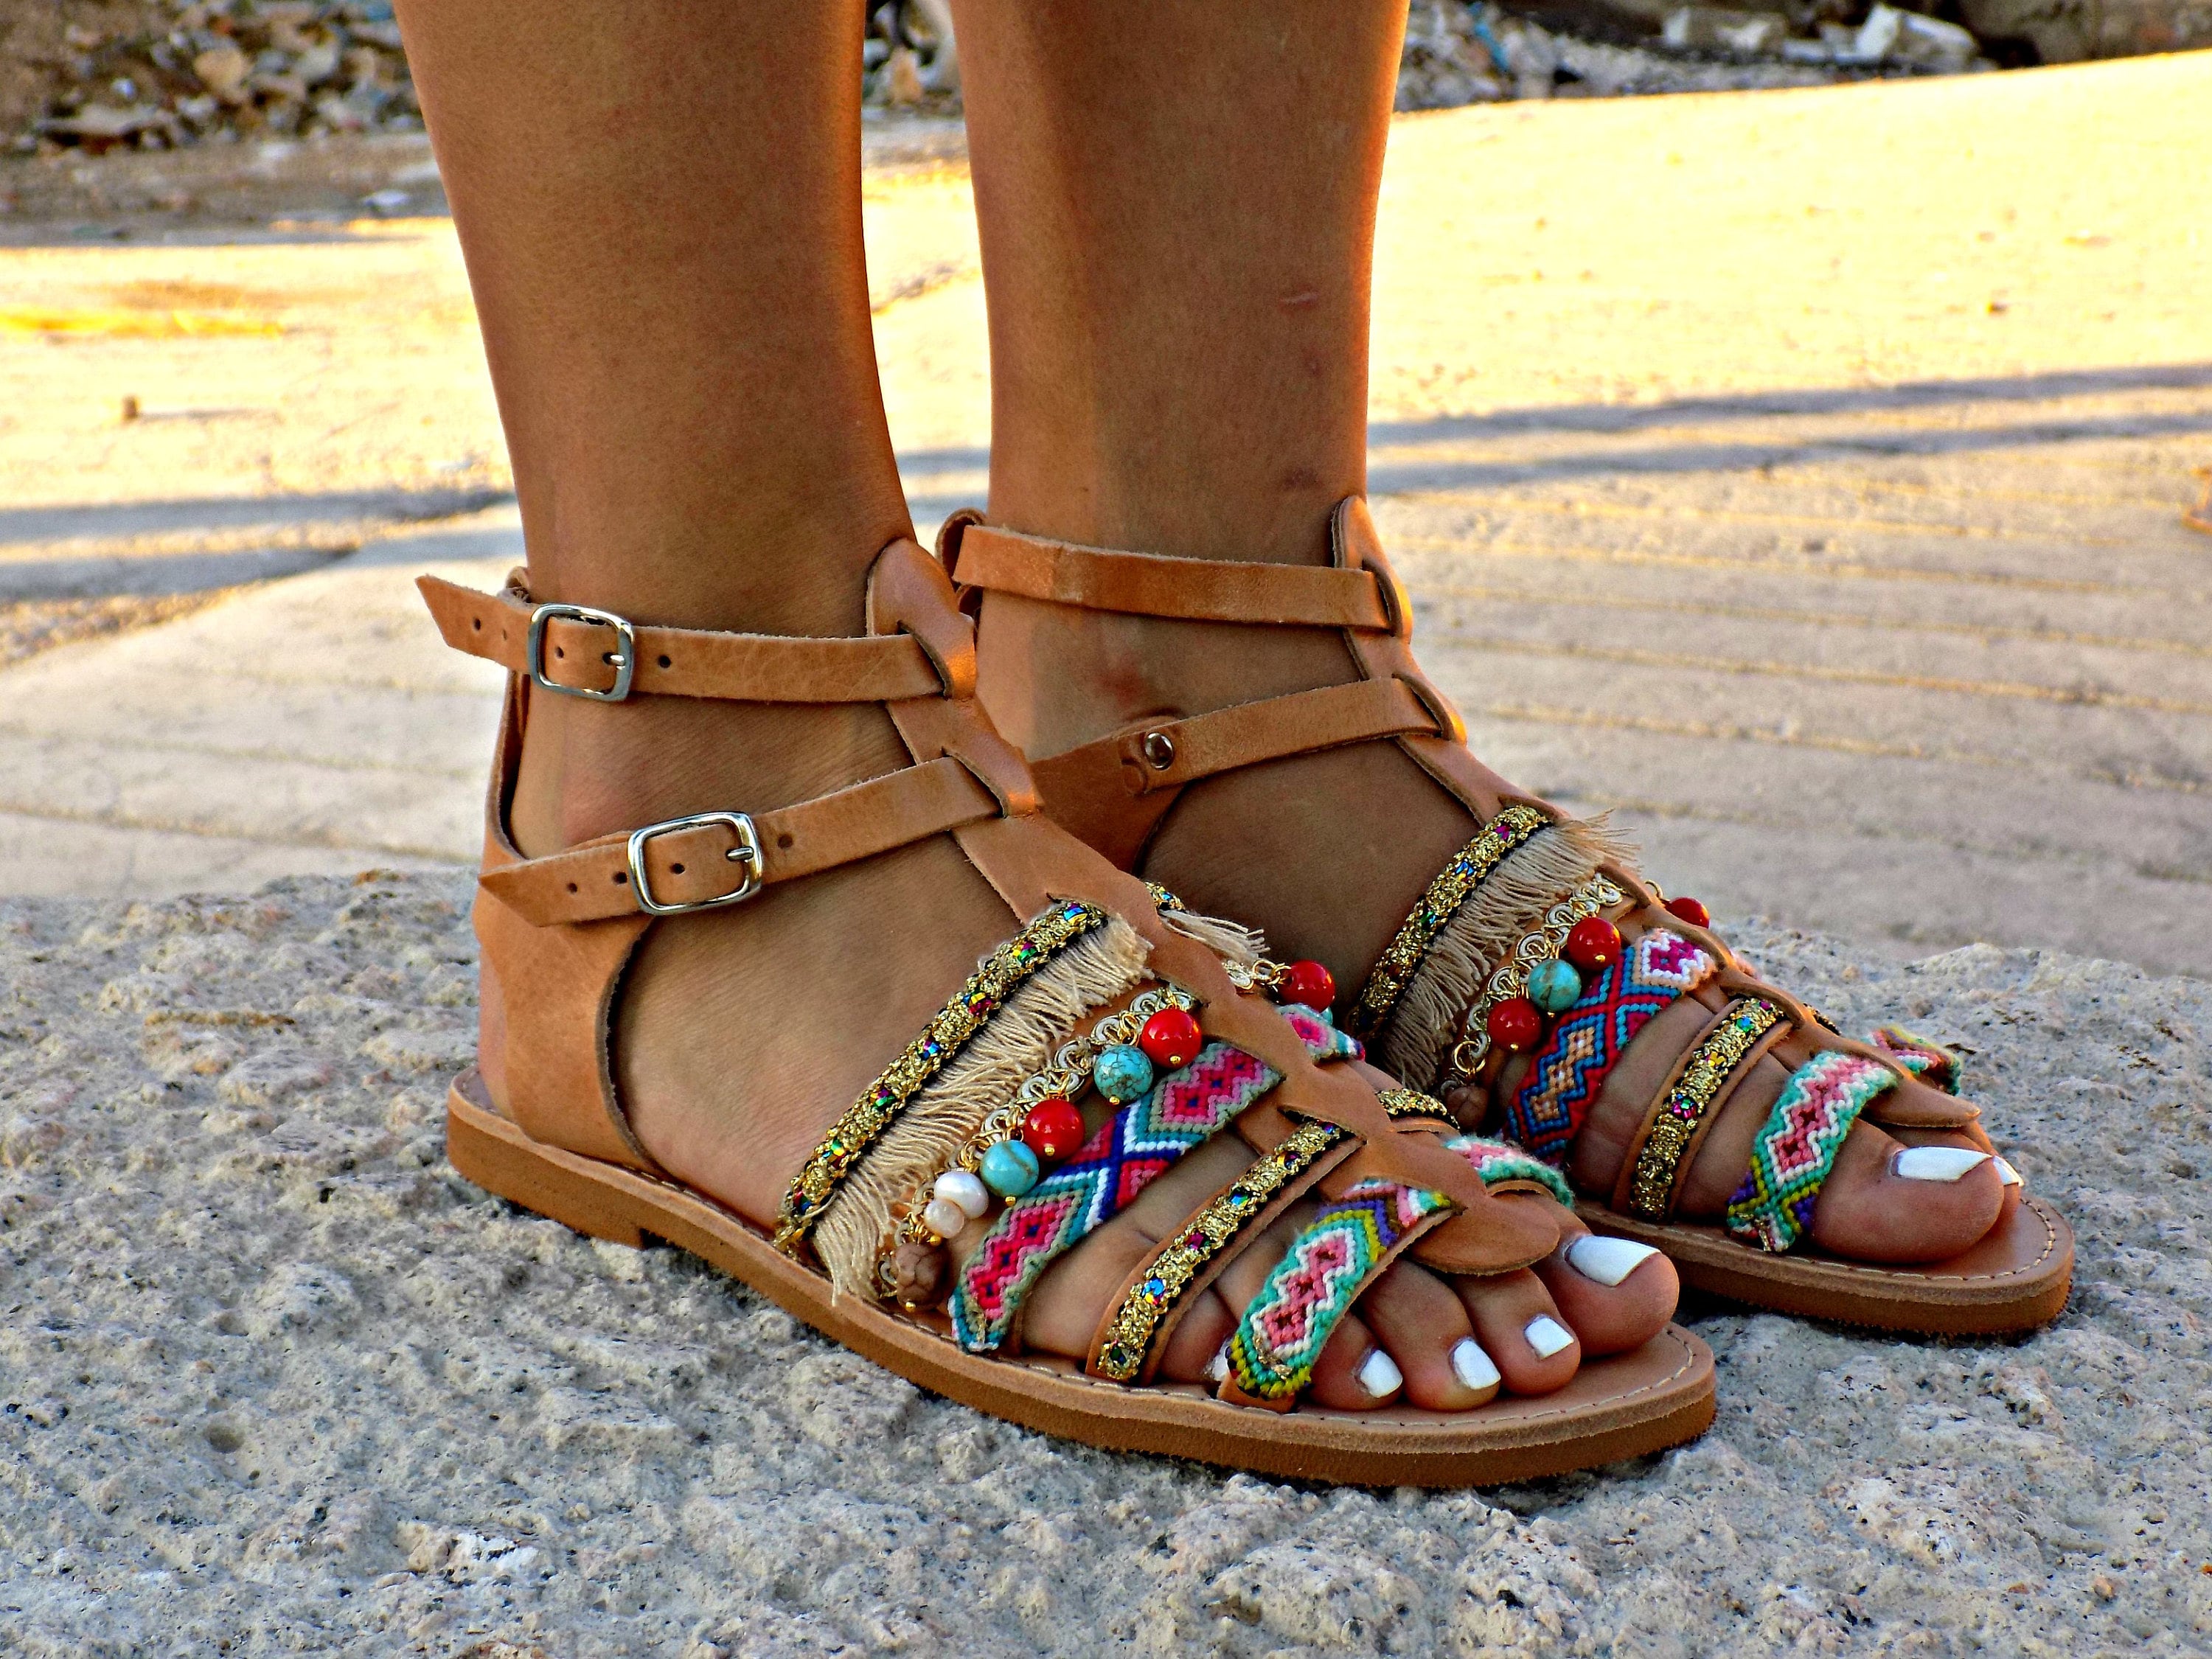 Handmade Leather Sandals Artisanal Greek Sandals Women | Etsy